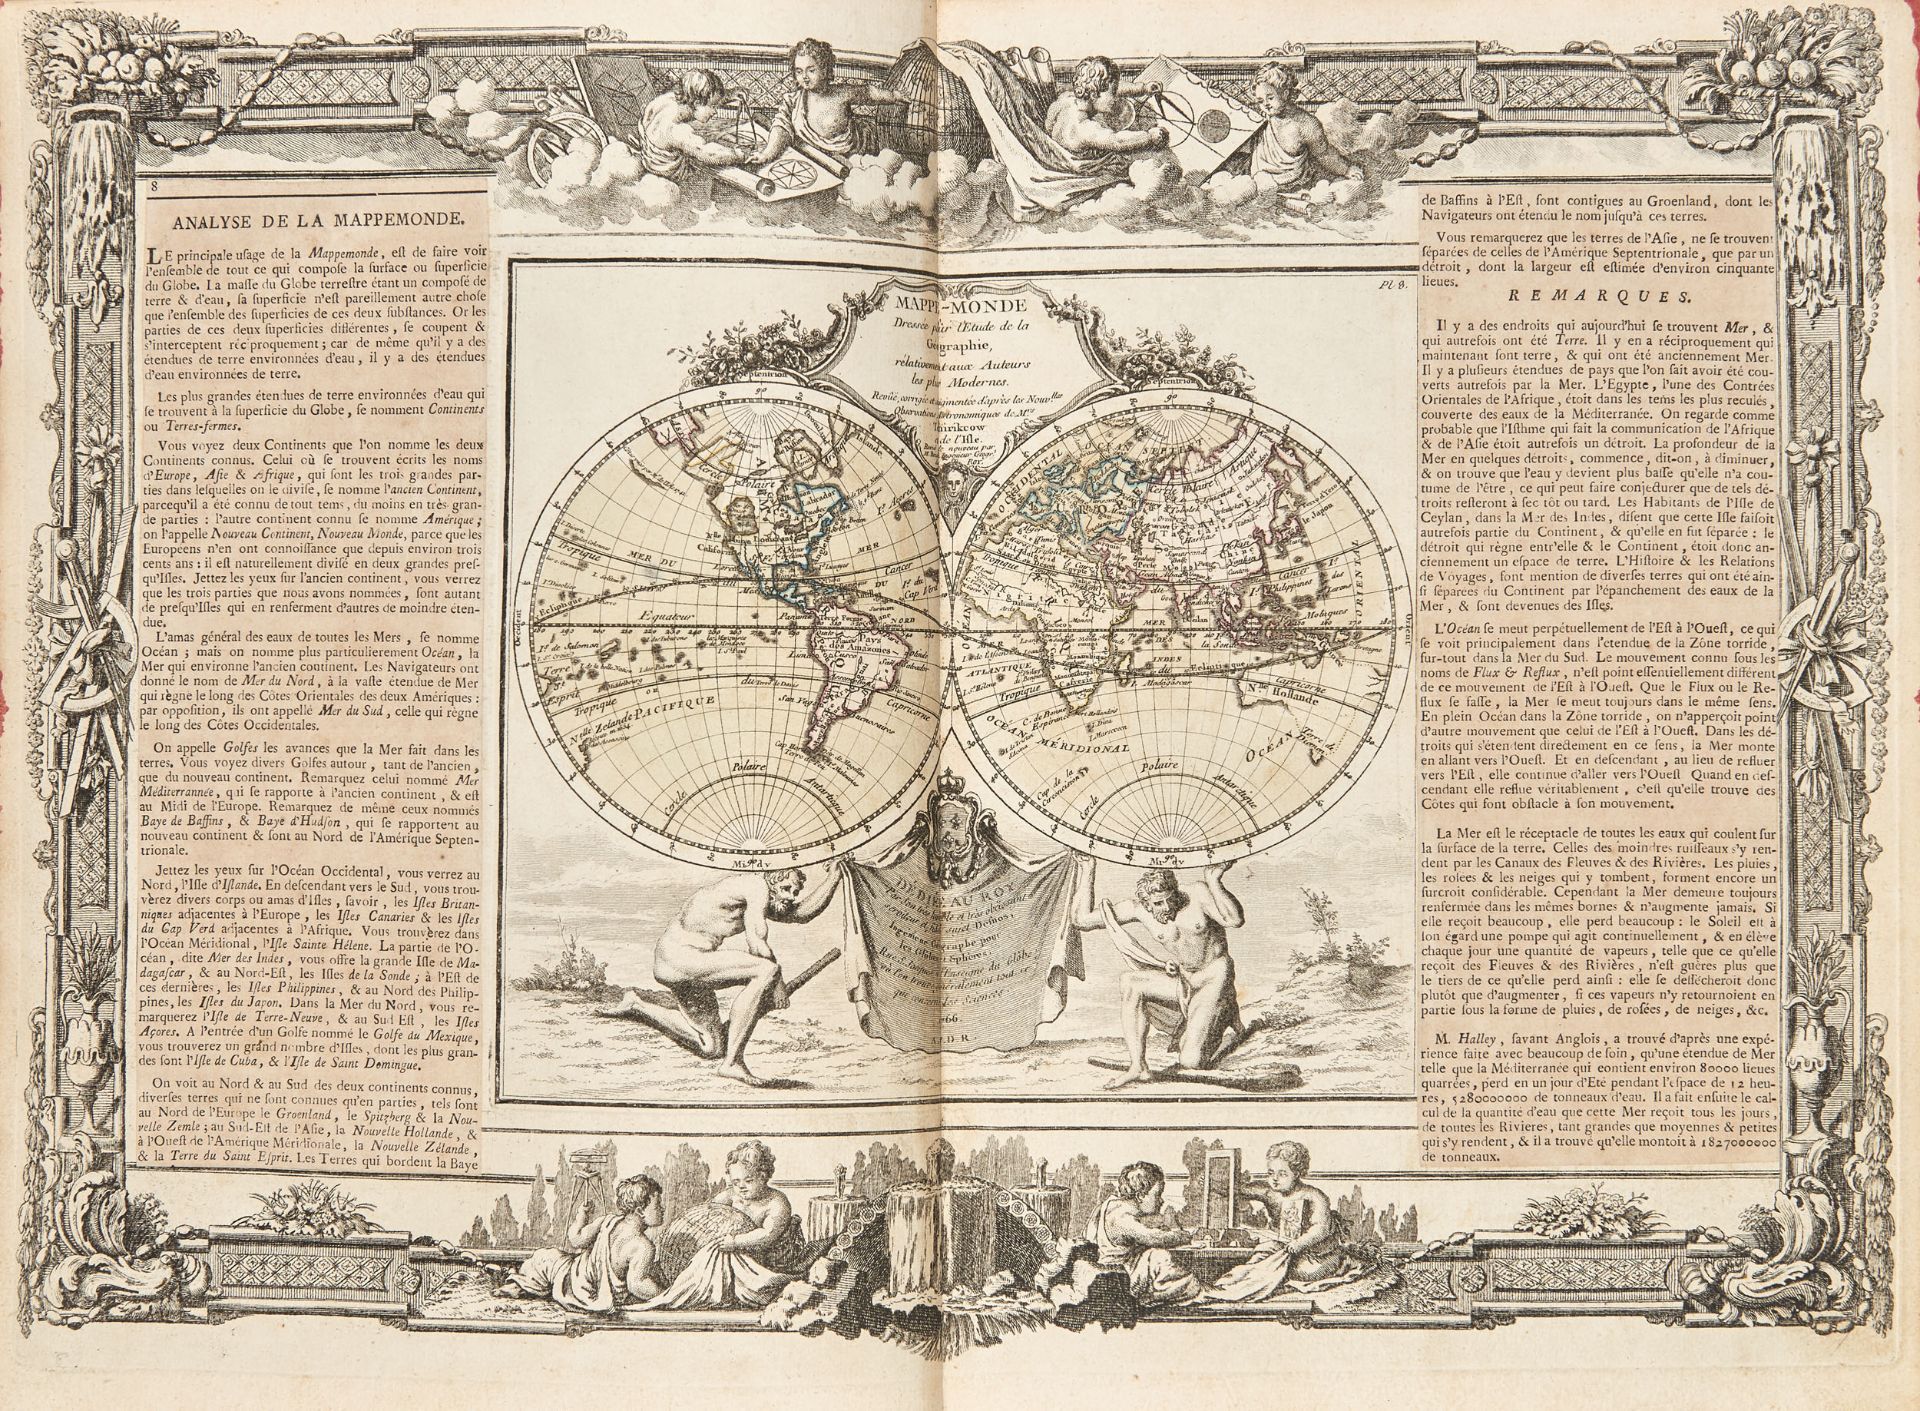 MACLOT, Jean Charles (1728-1805). Atlas general methodique et elementaire, pour l'etude de la